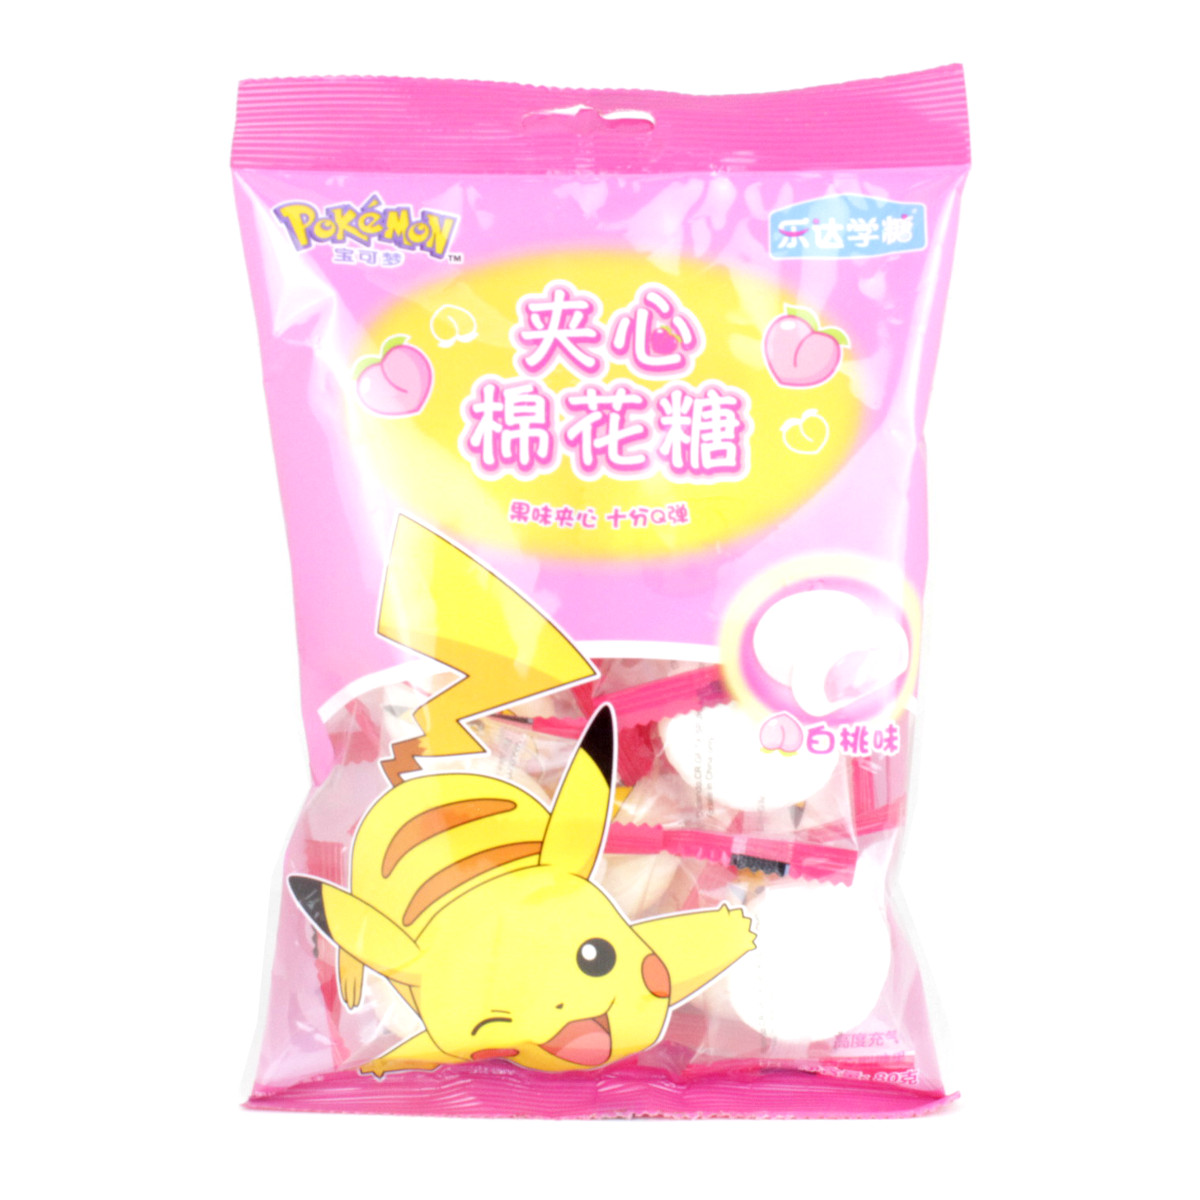 Marshmallow Recheado com Pêssego Pokemon - 80 gramas